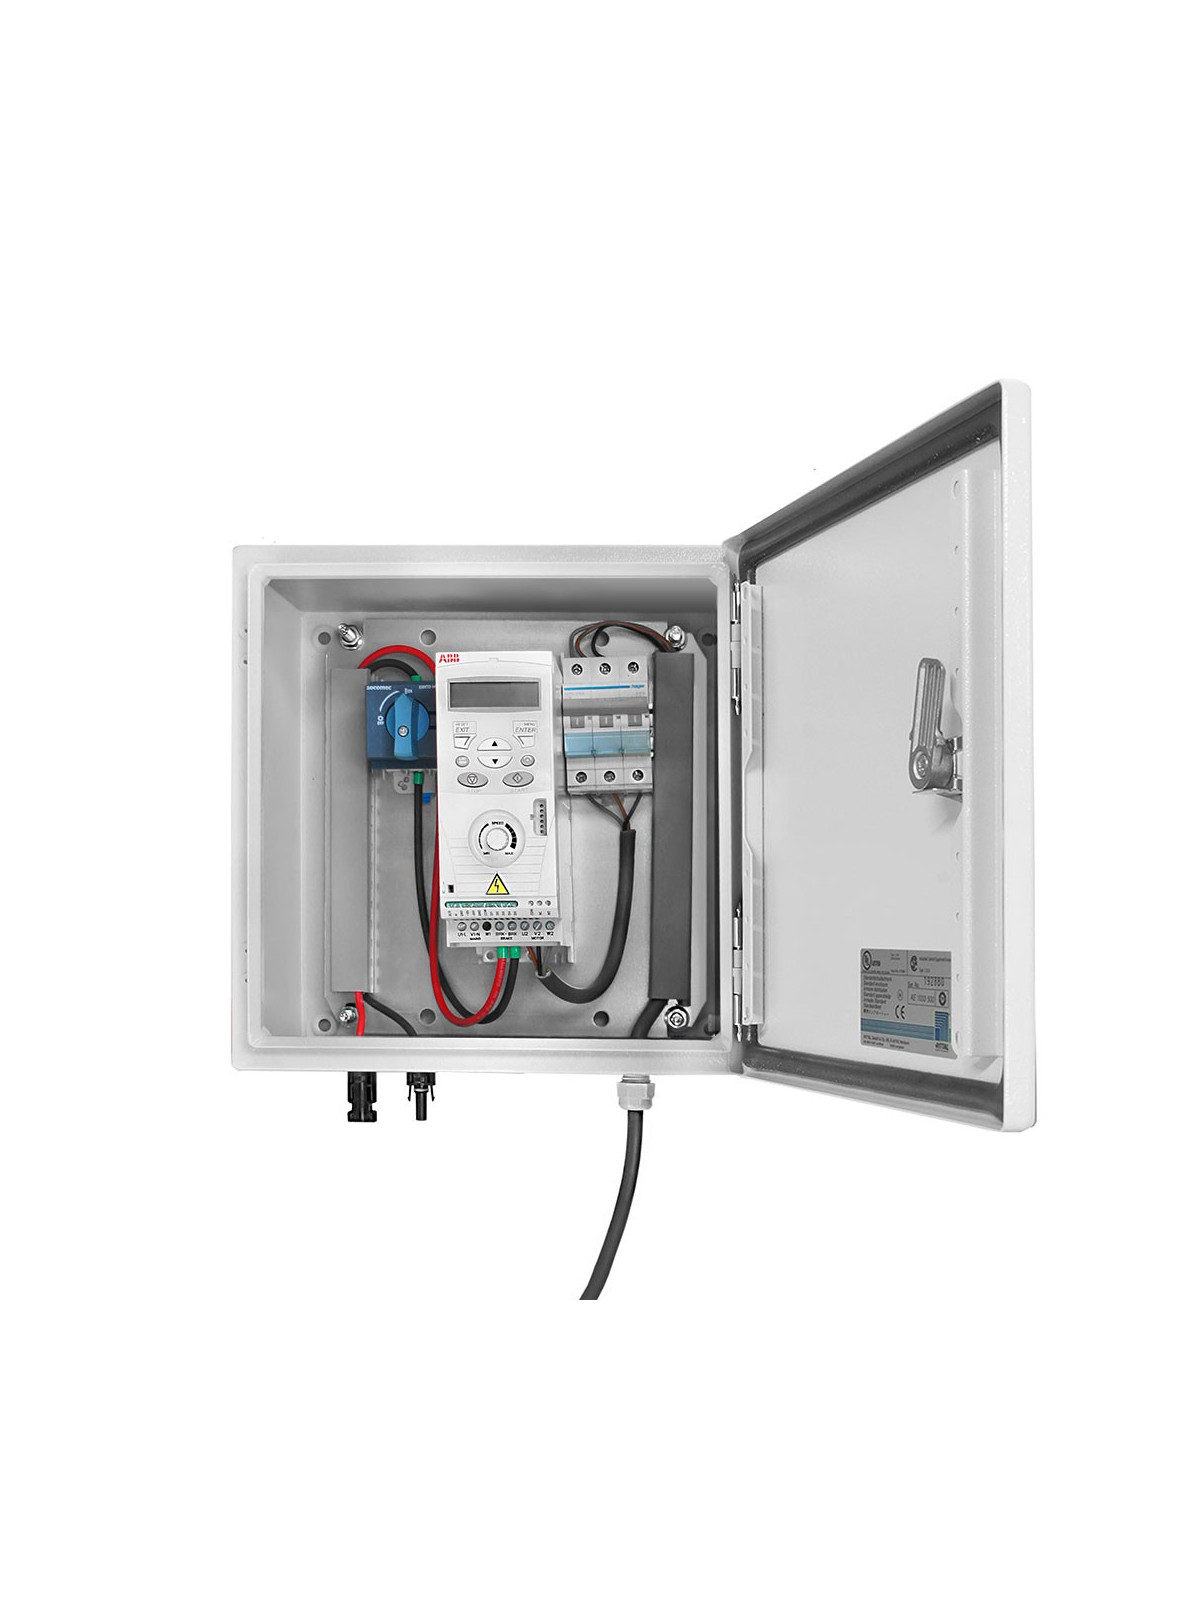 Prewired box for solar kit regulator